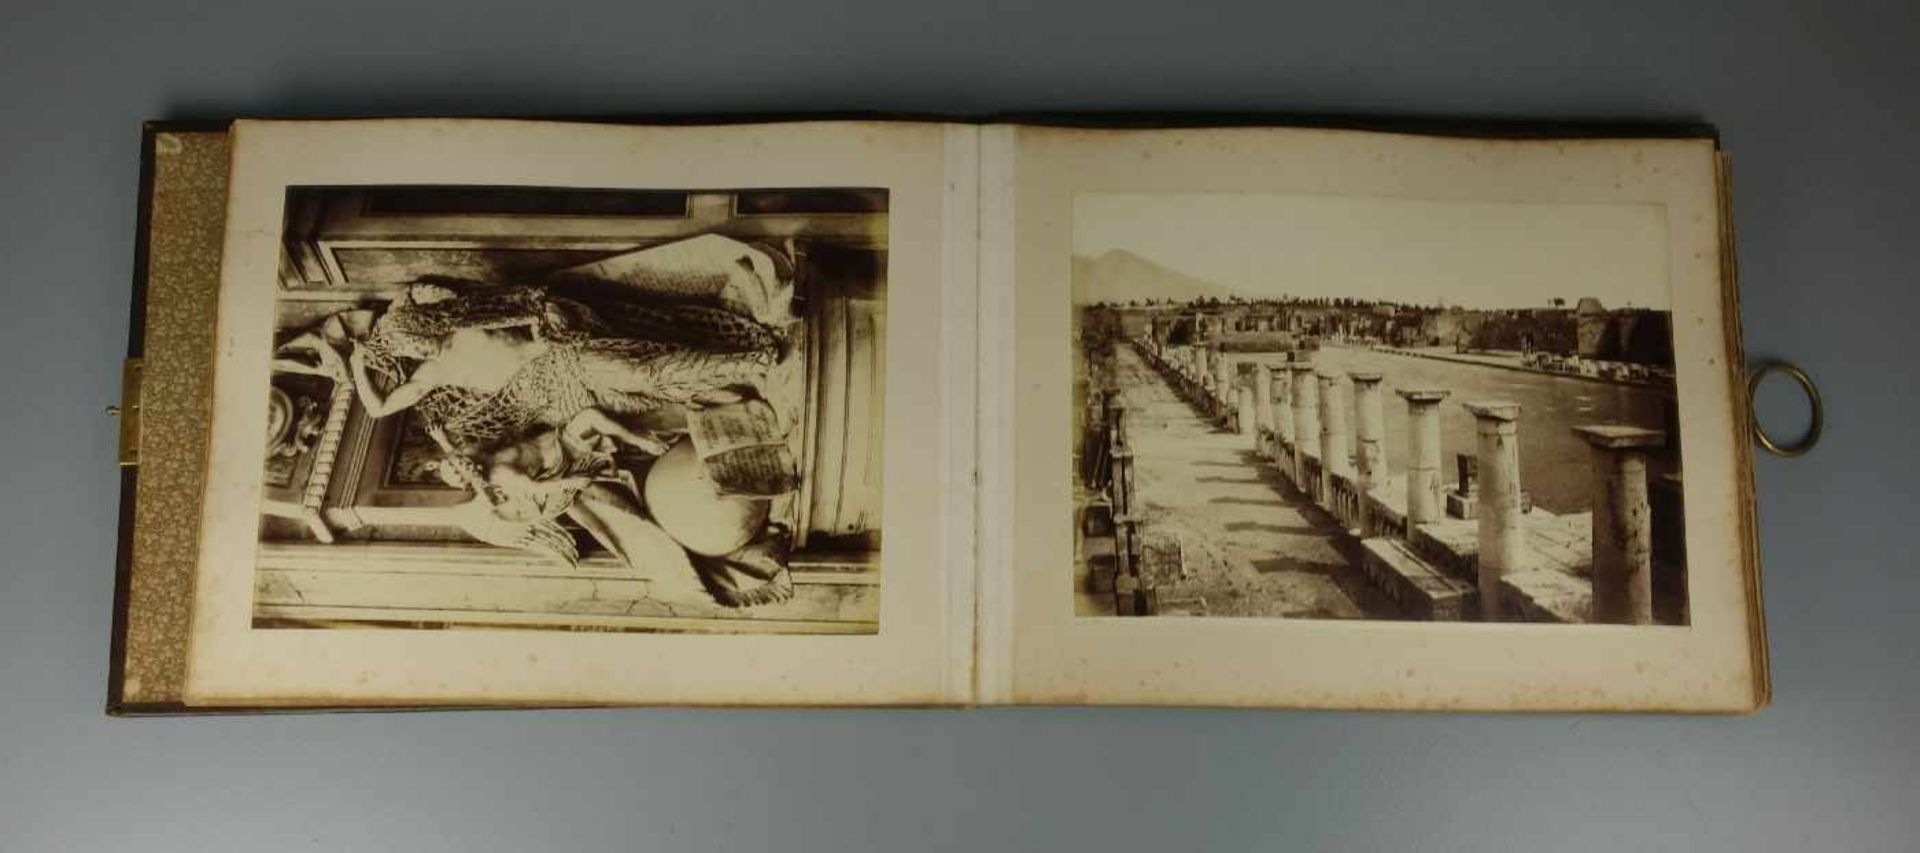 FOTOALBUM "ERINNERUNGEN AN NEAPEL1884", in Leder gebunden. Über 65 Fotografische und - Image 3 of 3